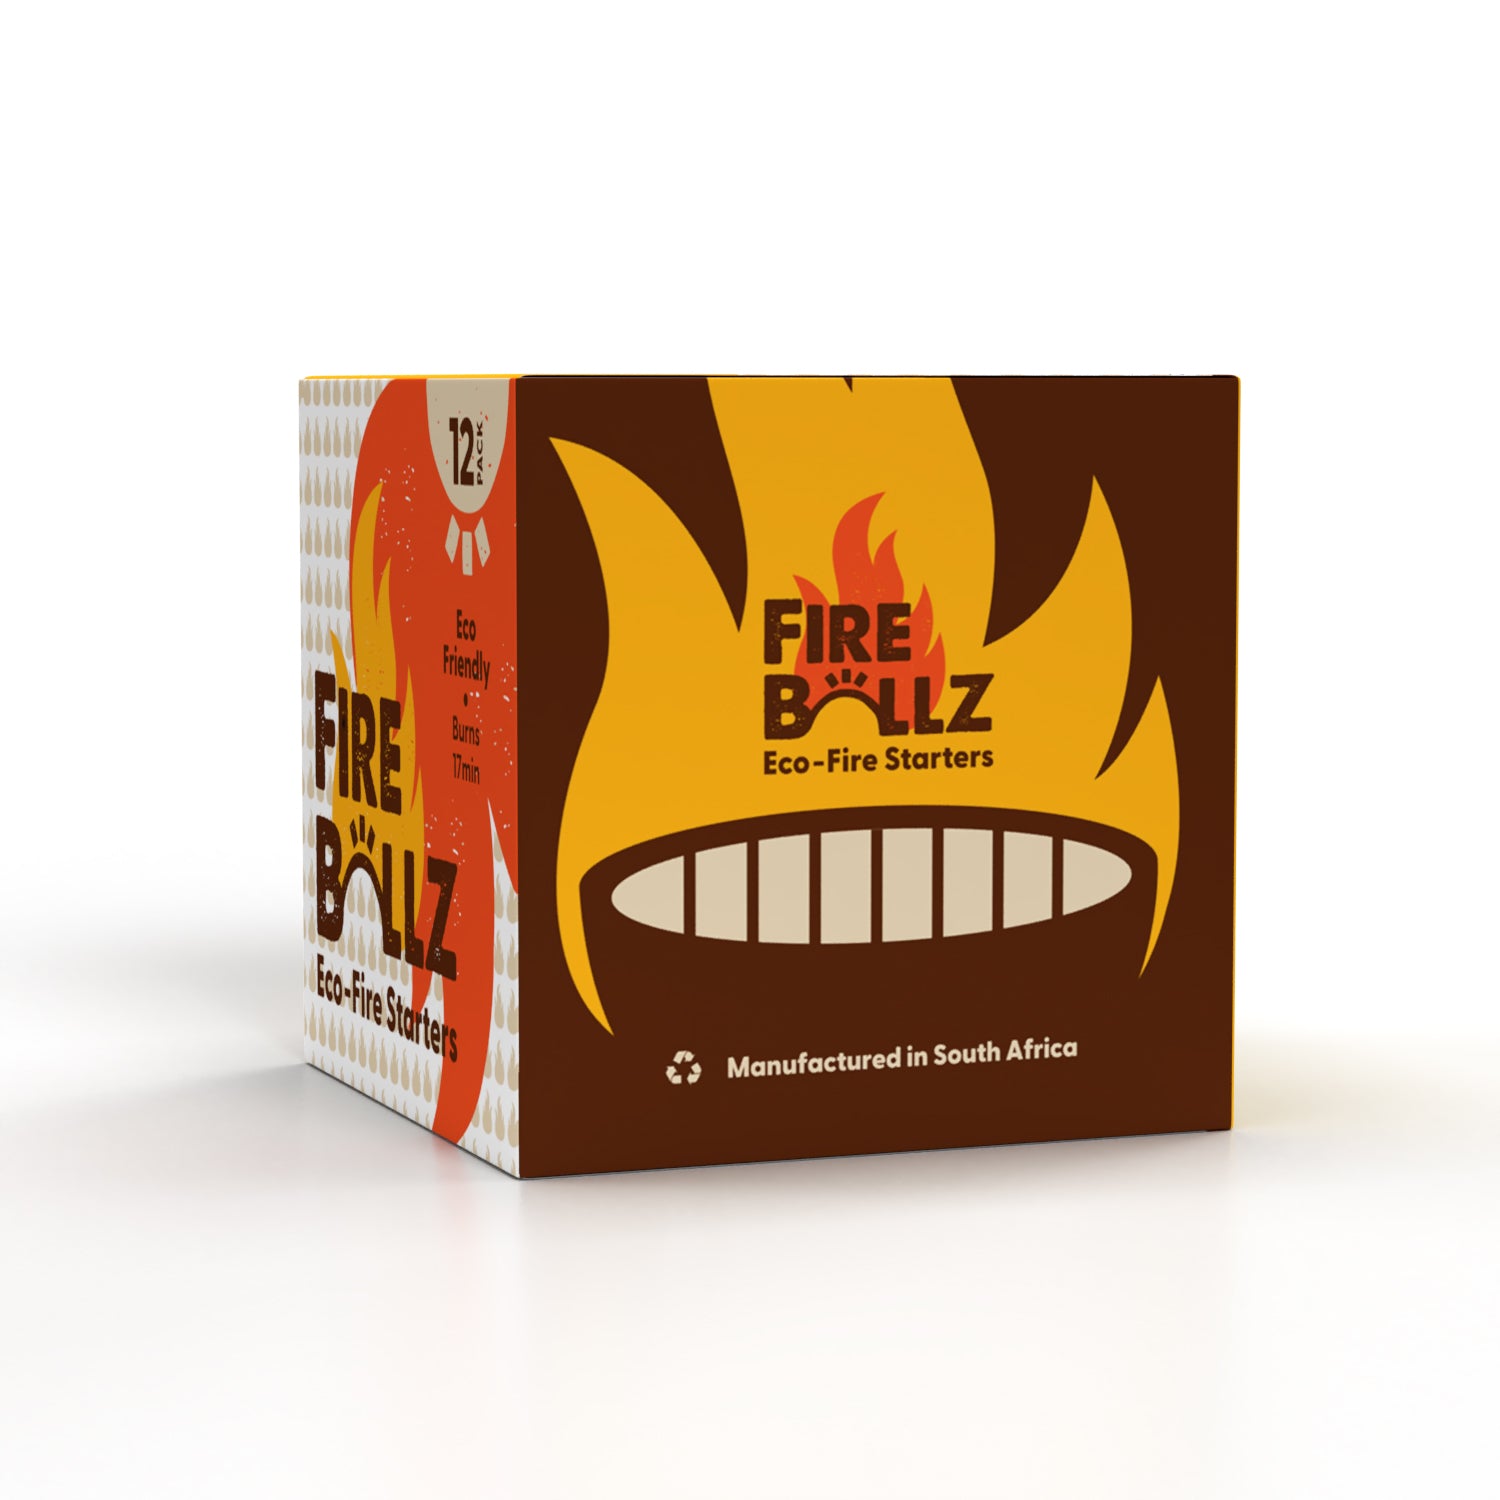 Fire Ballz Fire Starters 12 Pack